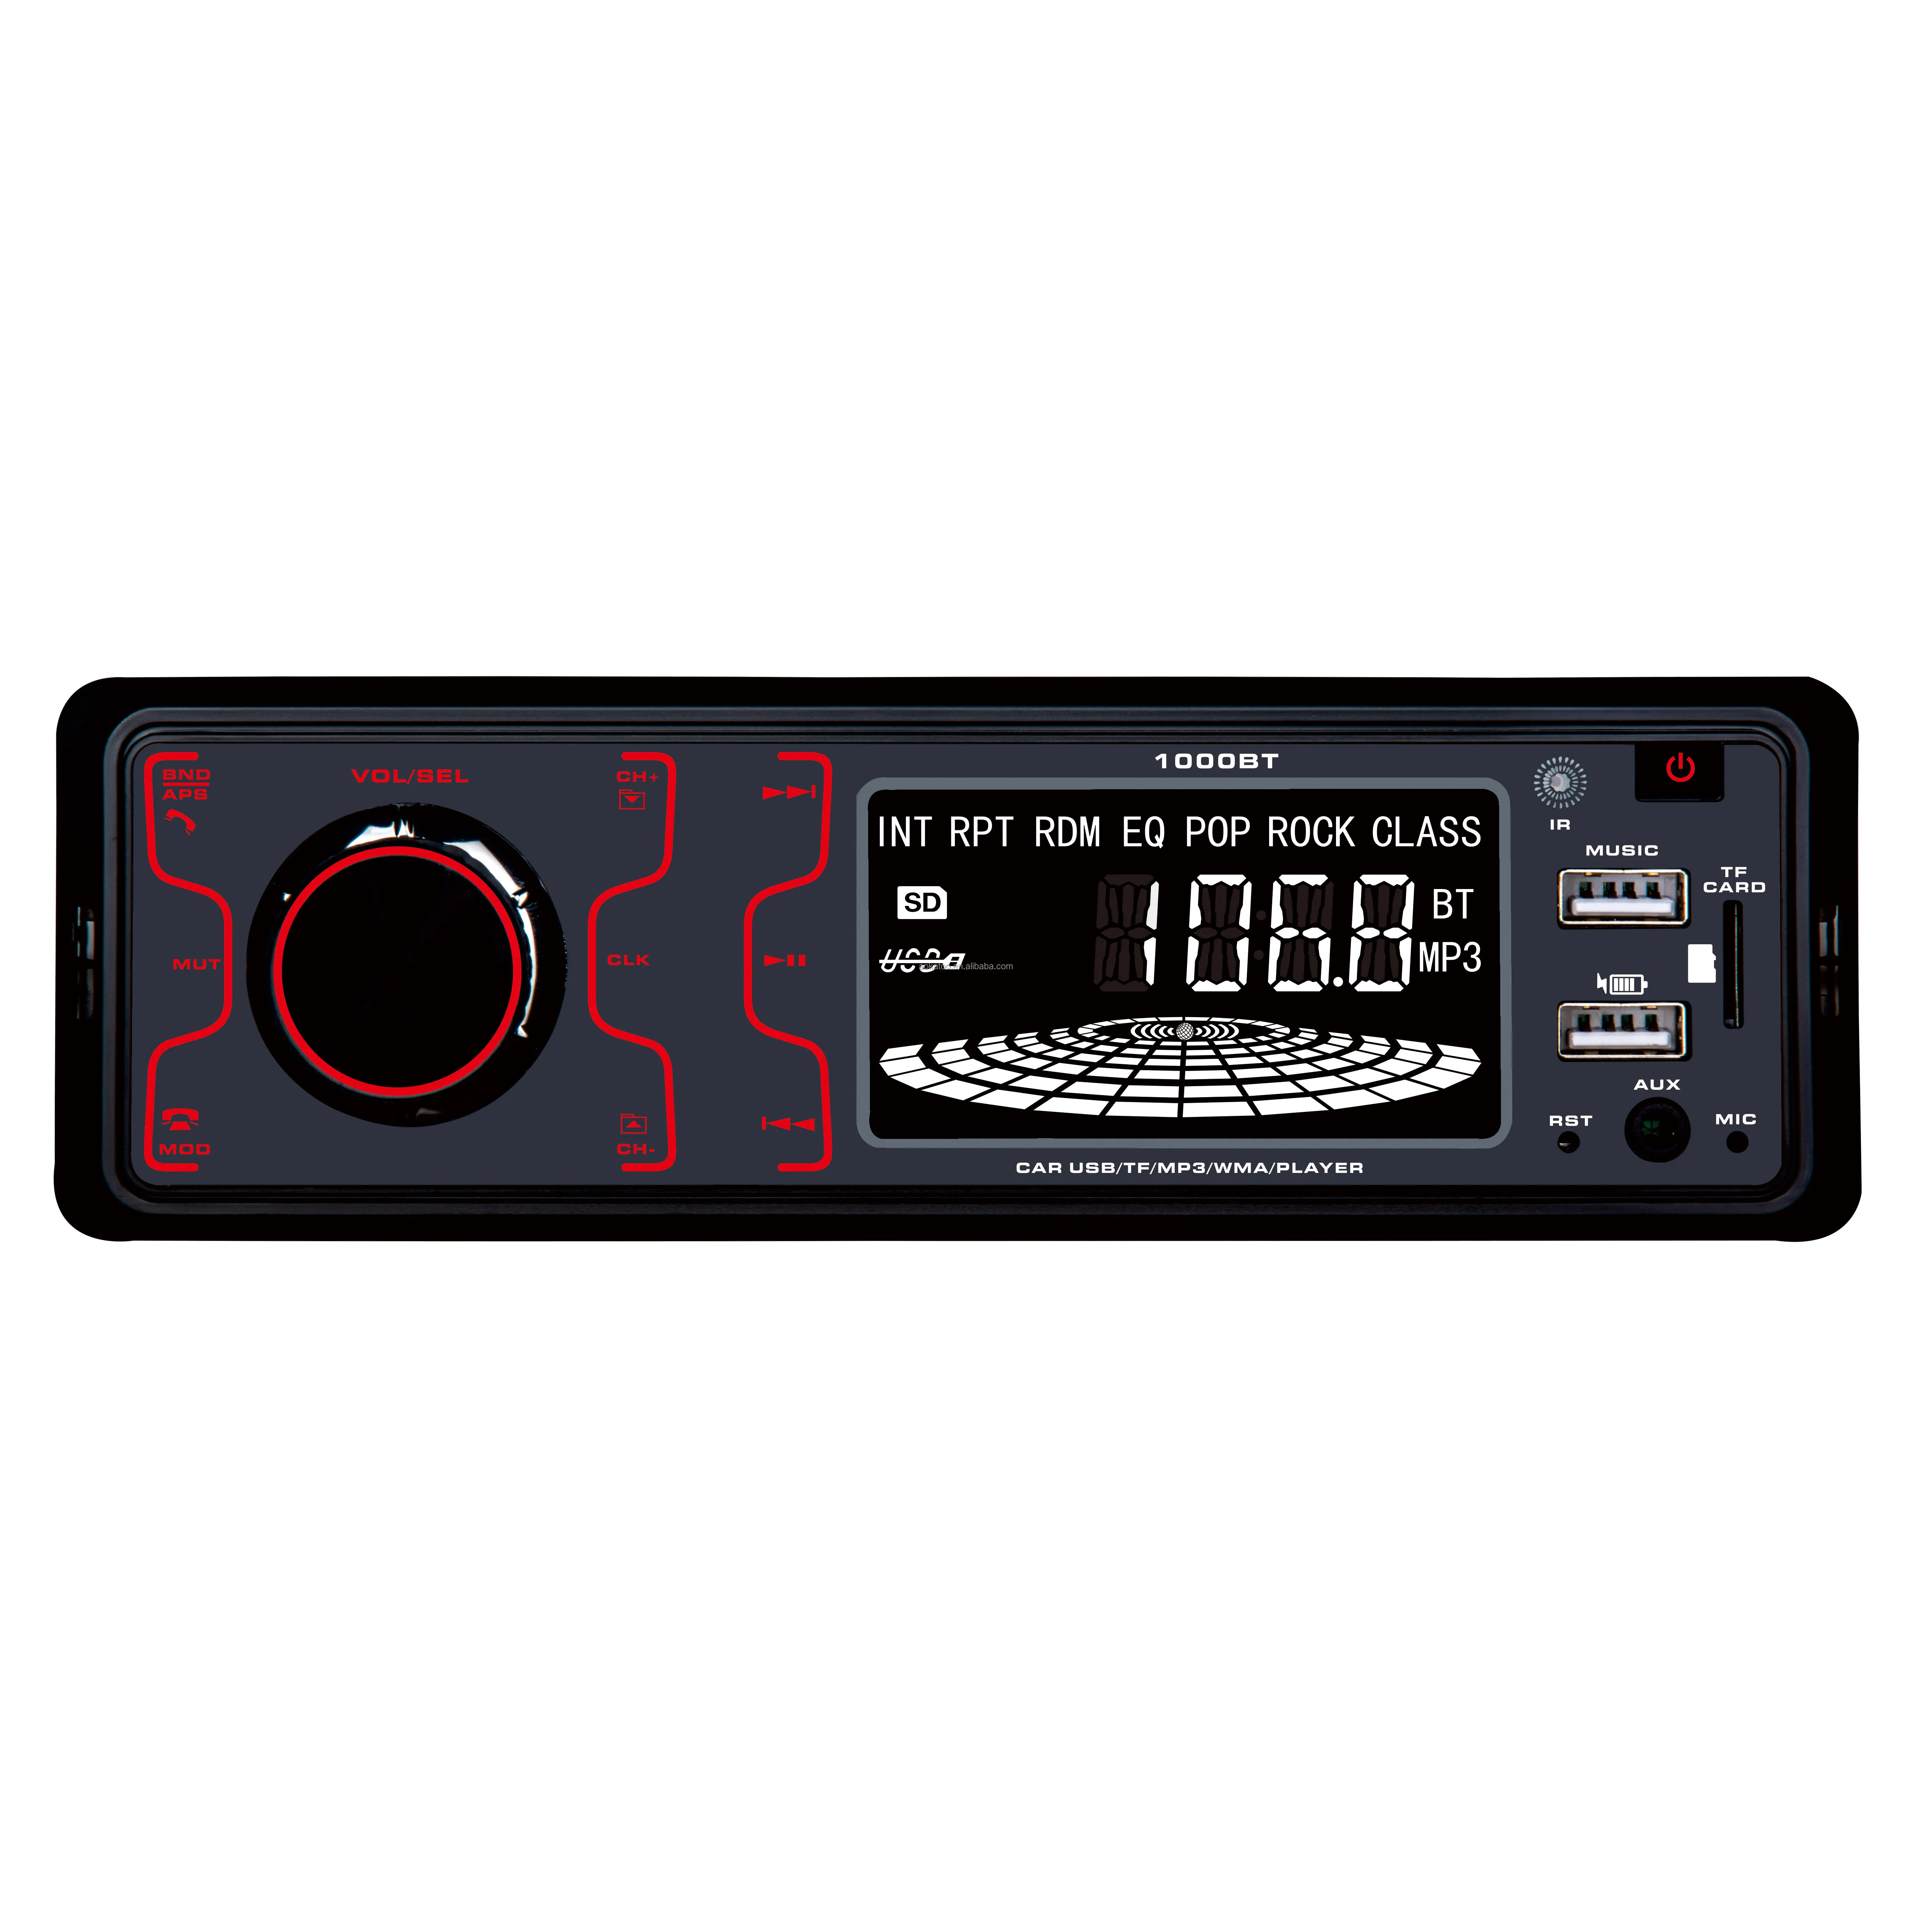 Radio Estéreo con botón de pantalla táctil para coche, radio FM de 12V, reproductor de Audio MP3, cargador de 5V, USB/SD/AUX, electrónica en tablero, 1 DIN FOB